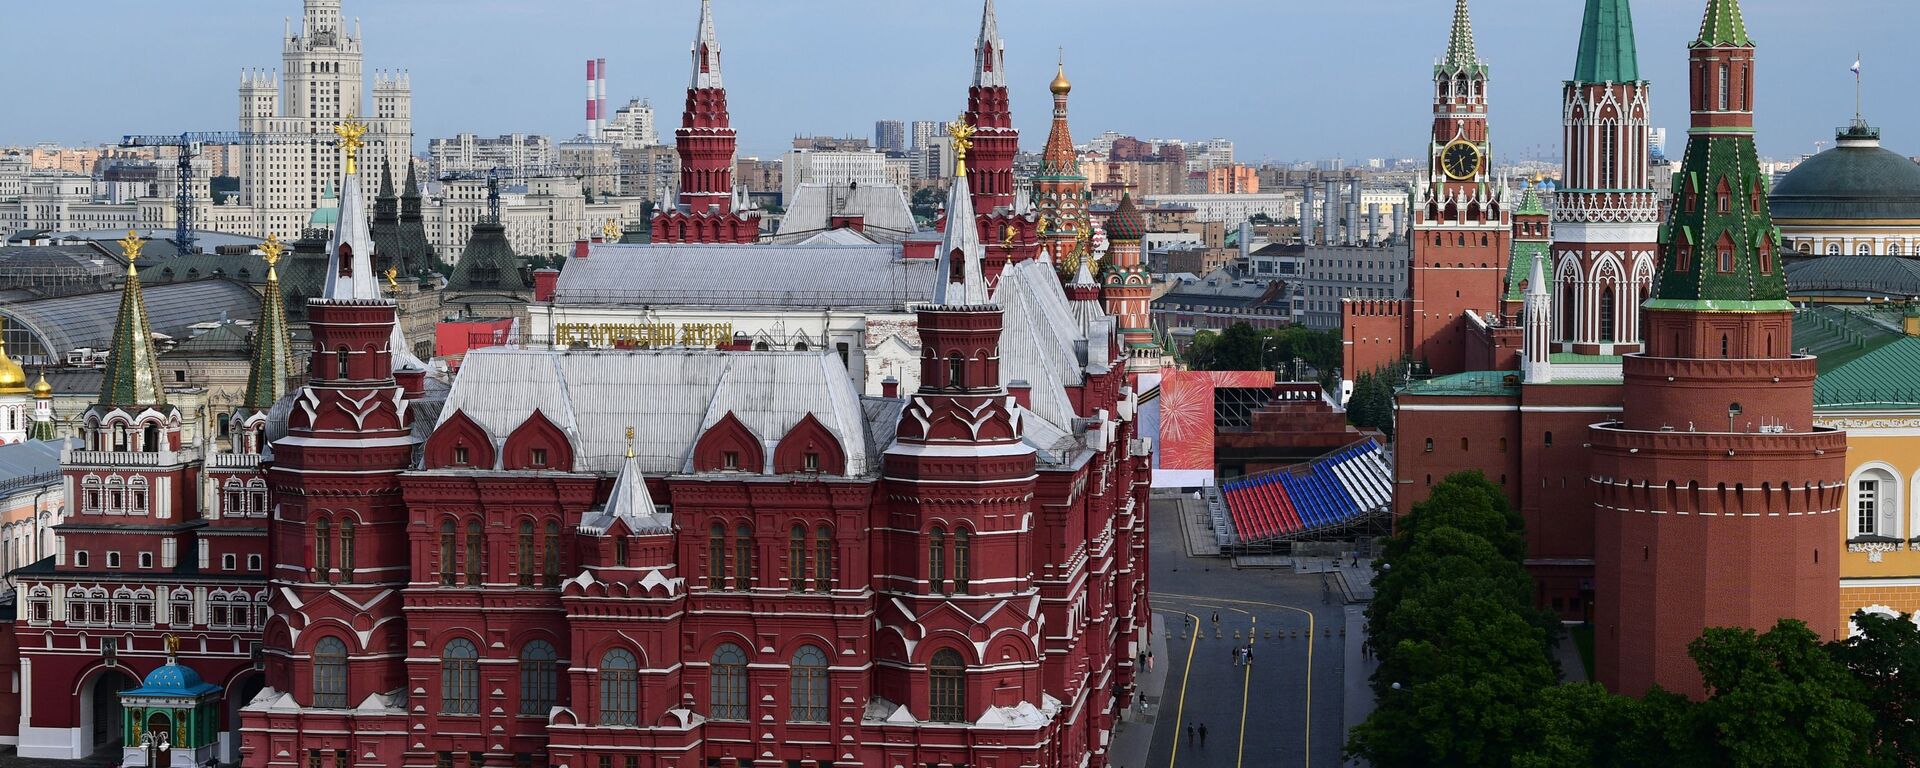 Вид на Кремль в центре Москвы, фото из архива - Sputnik Азербайджан, 1920, 13.10.2021